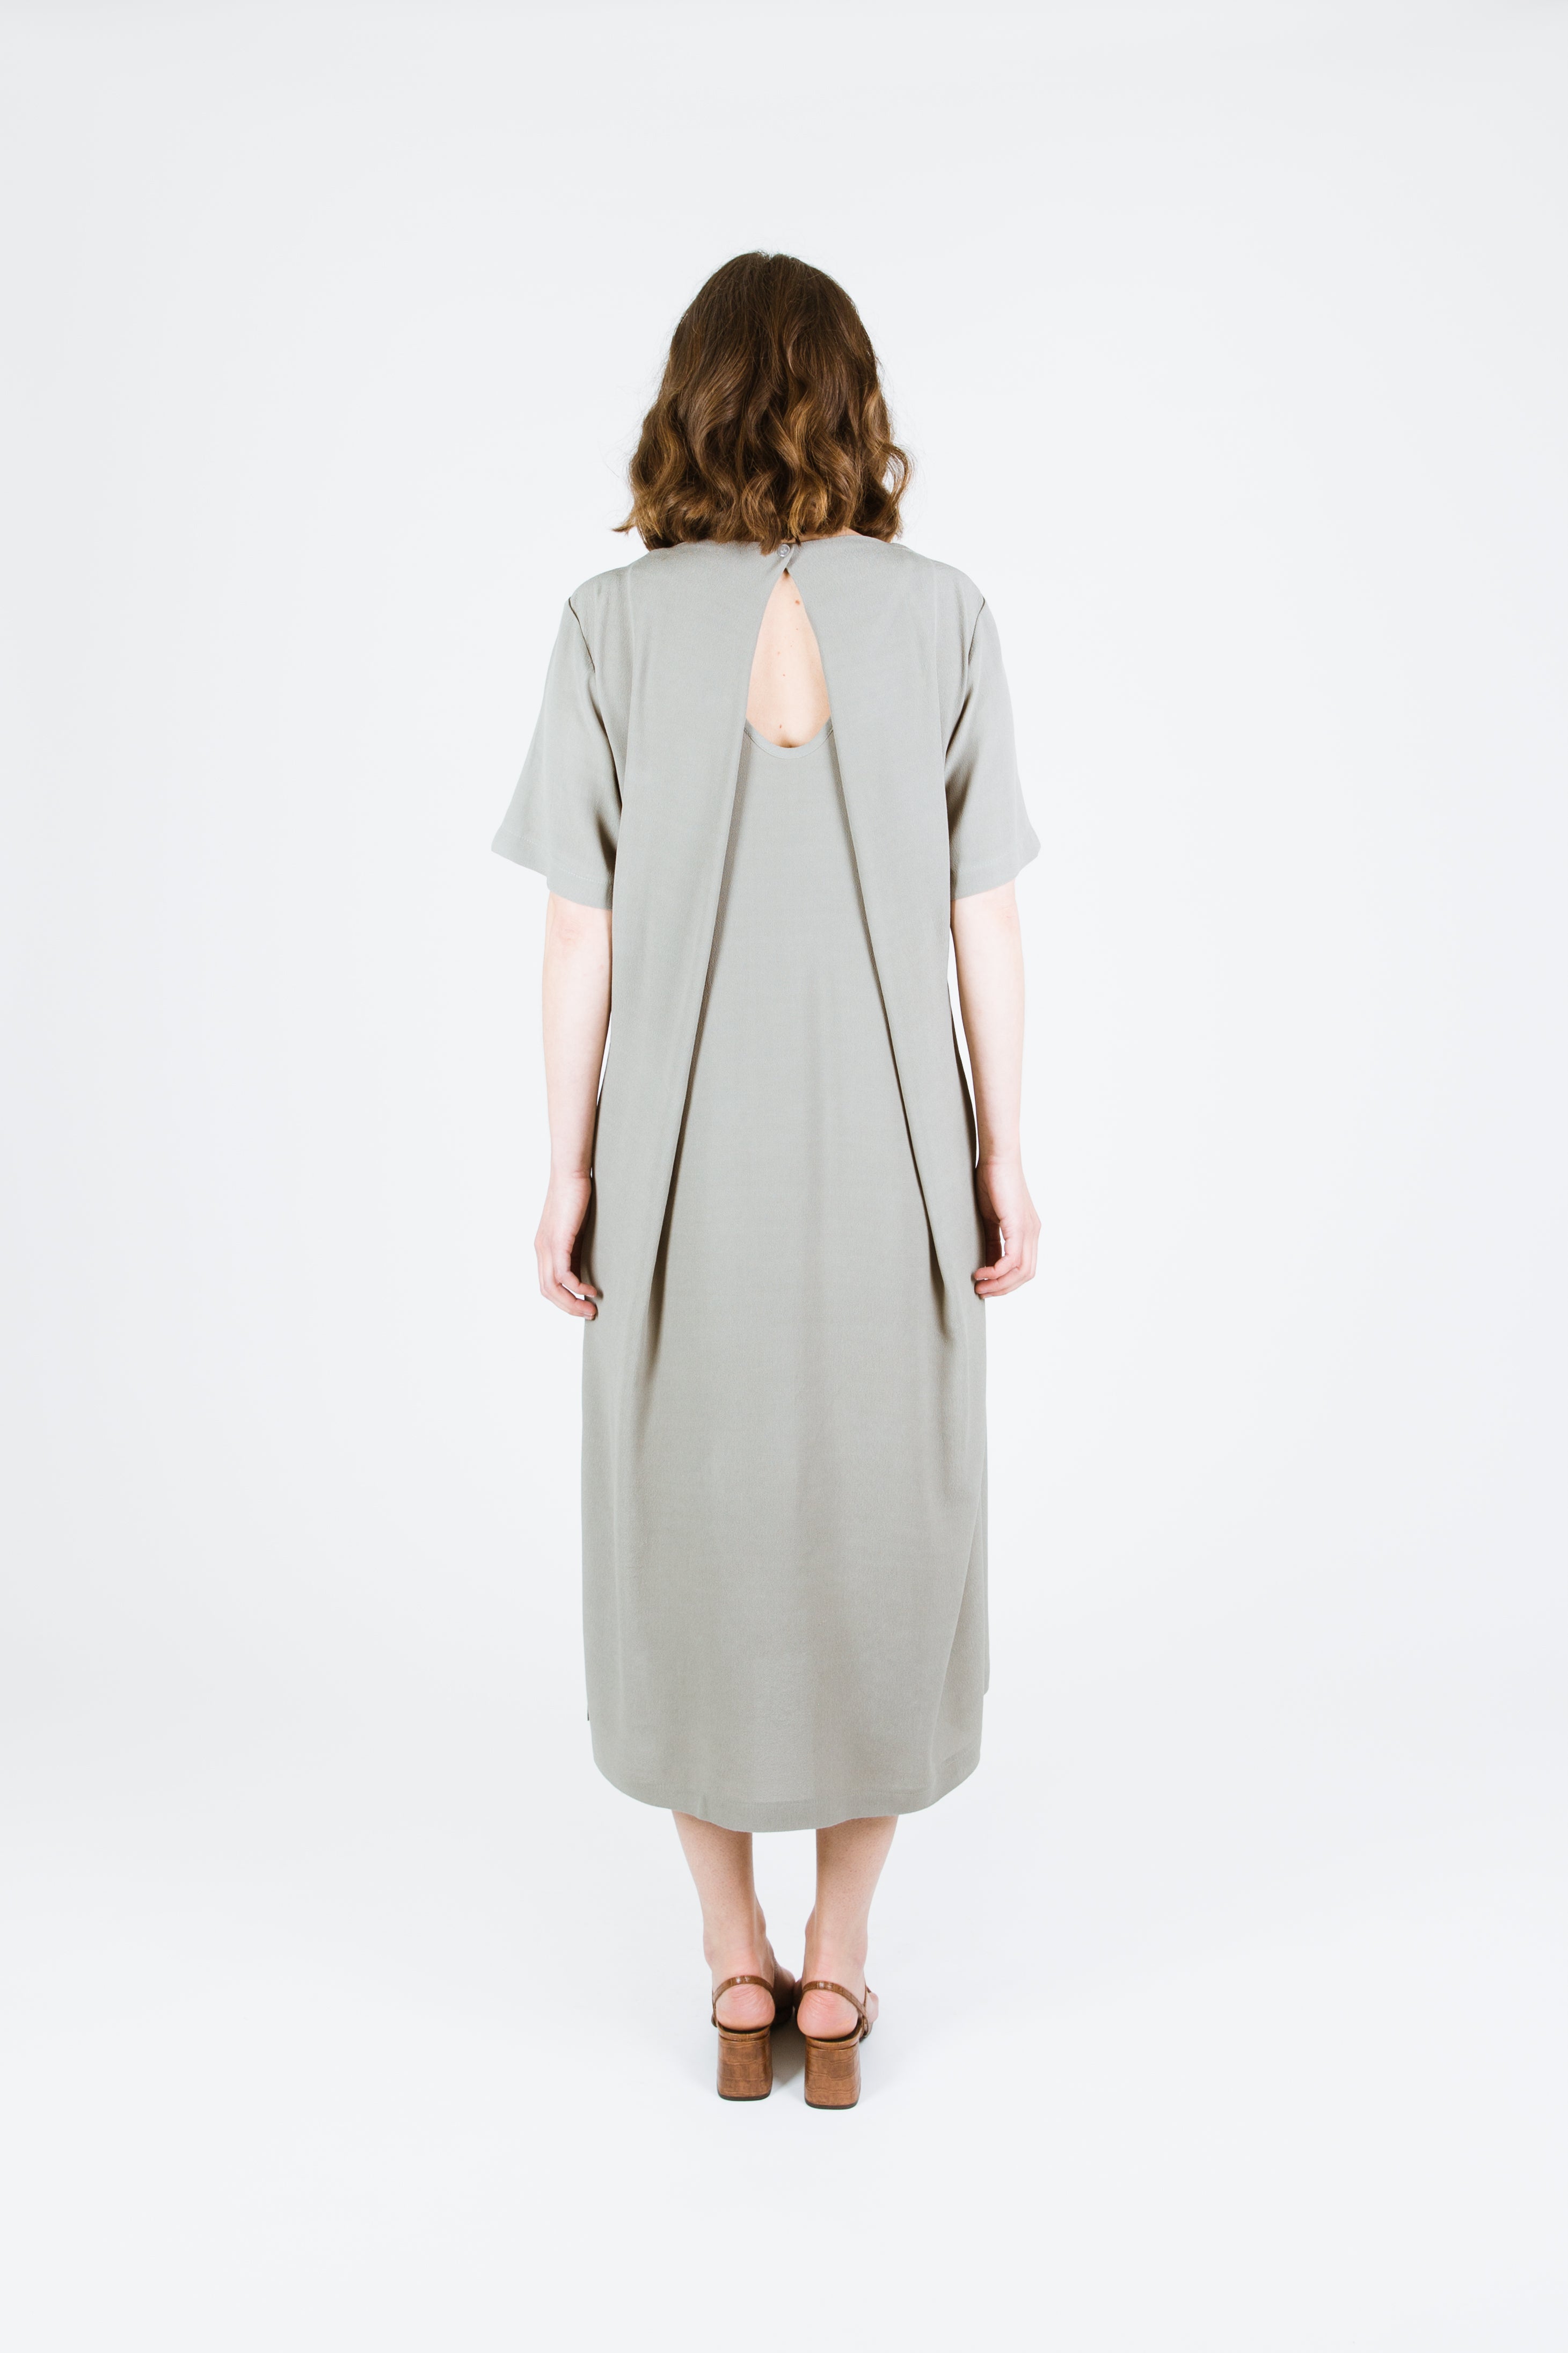 Papercut Patterns - Kobe Dress / Top Sewing Pattern